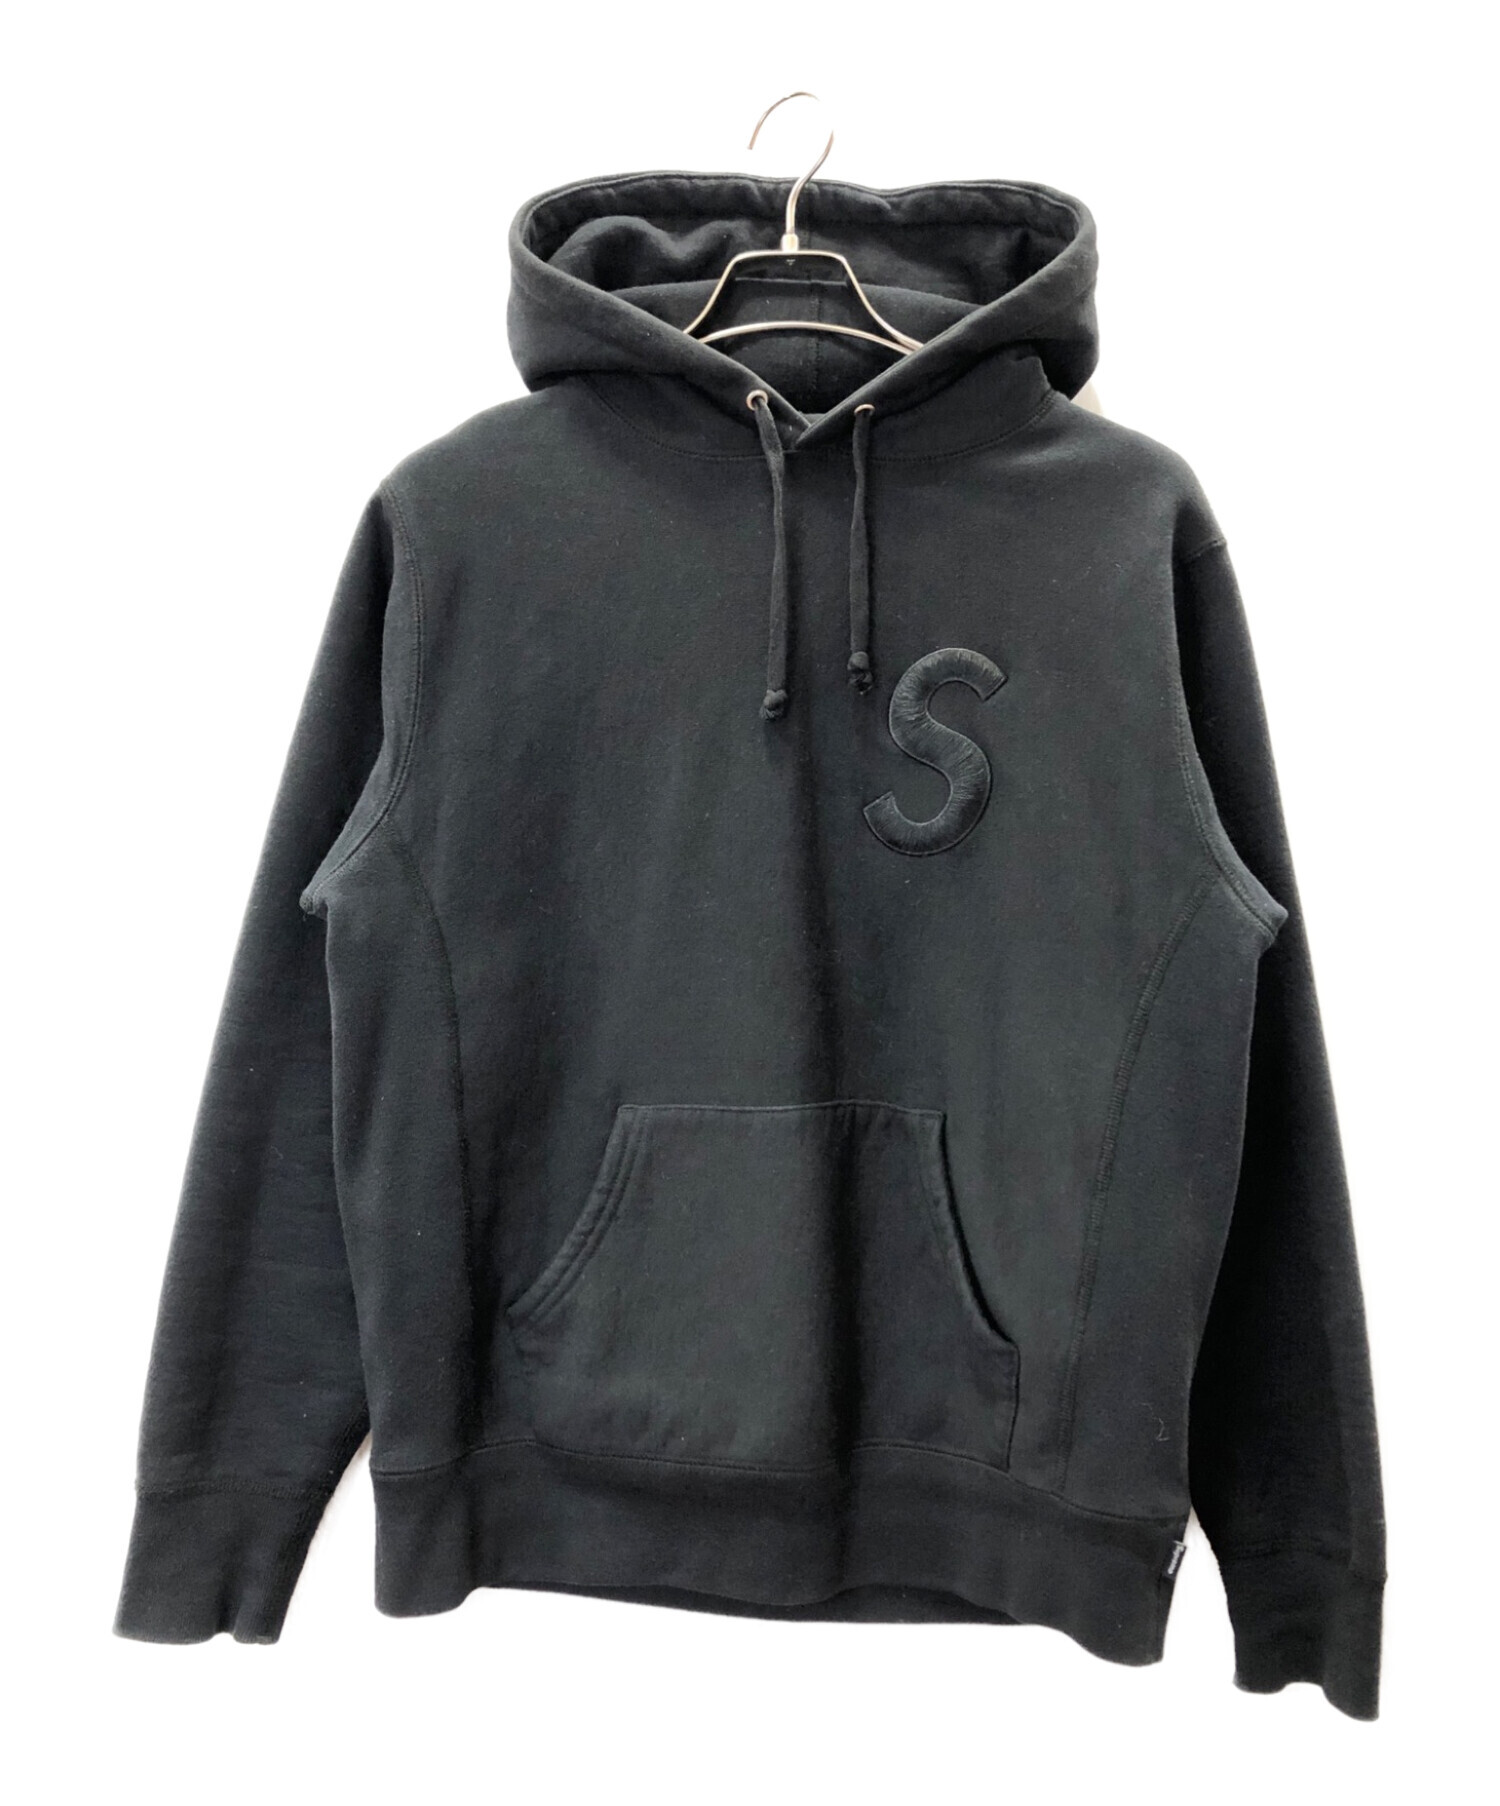 柄デザイン無地ワンポイントsupreme tonal s logo hooded sweatshirt